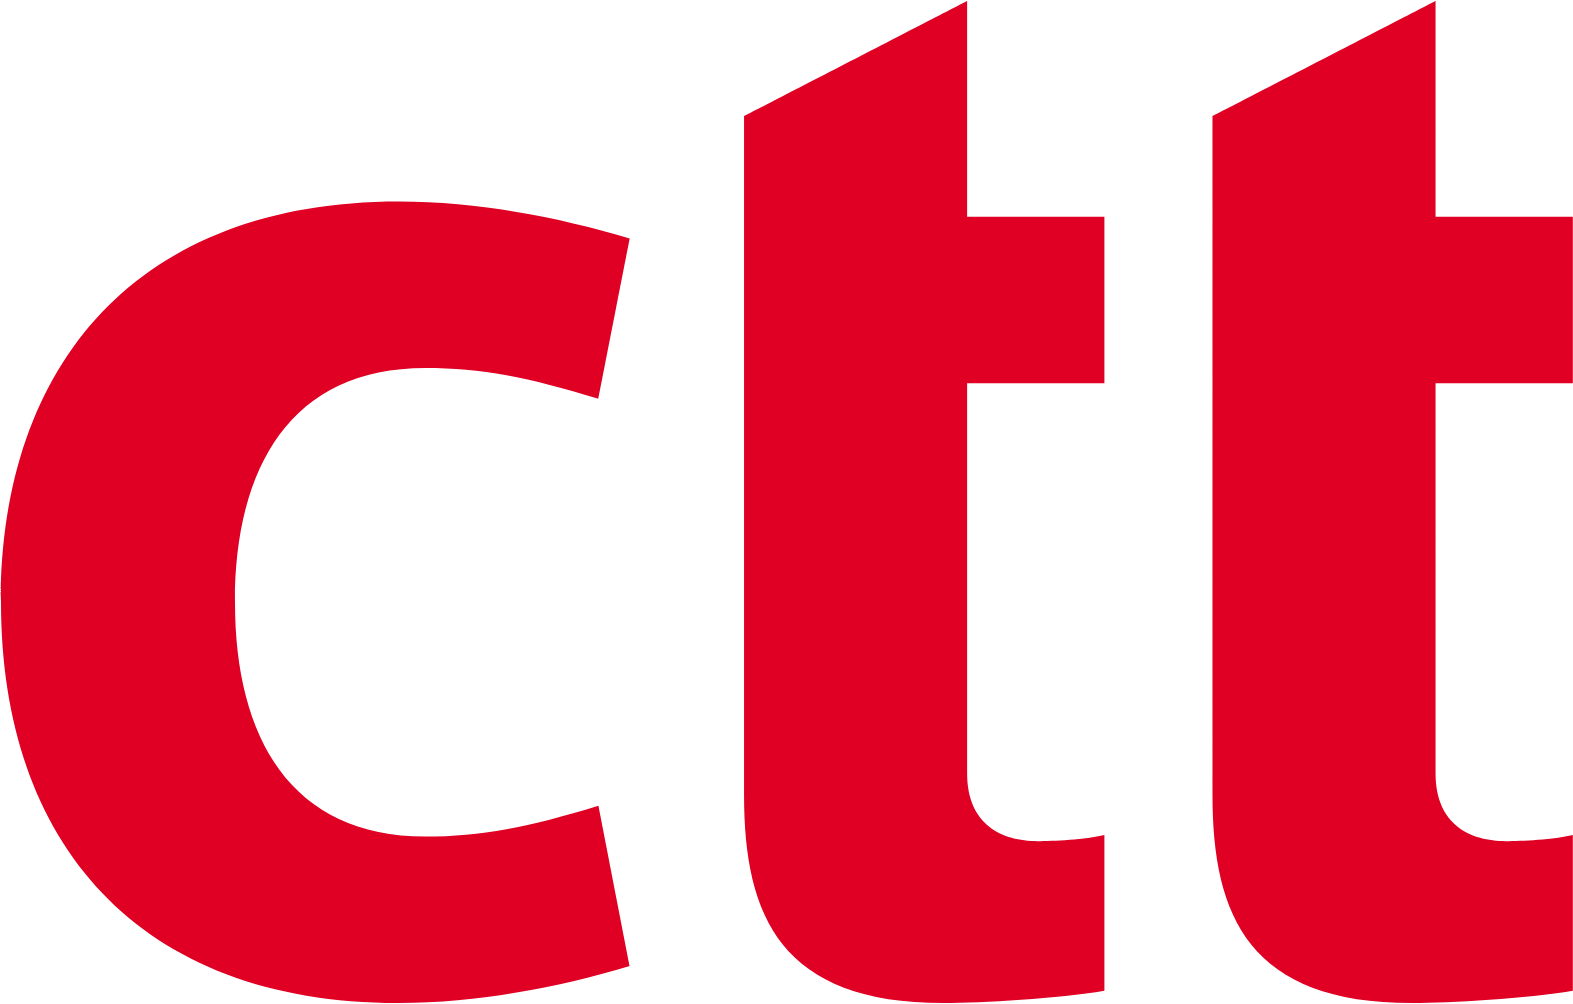 CTT - Correios De Portugal logo (PNG transparent)